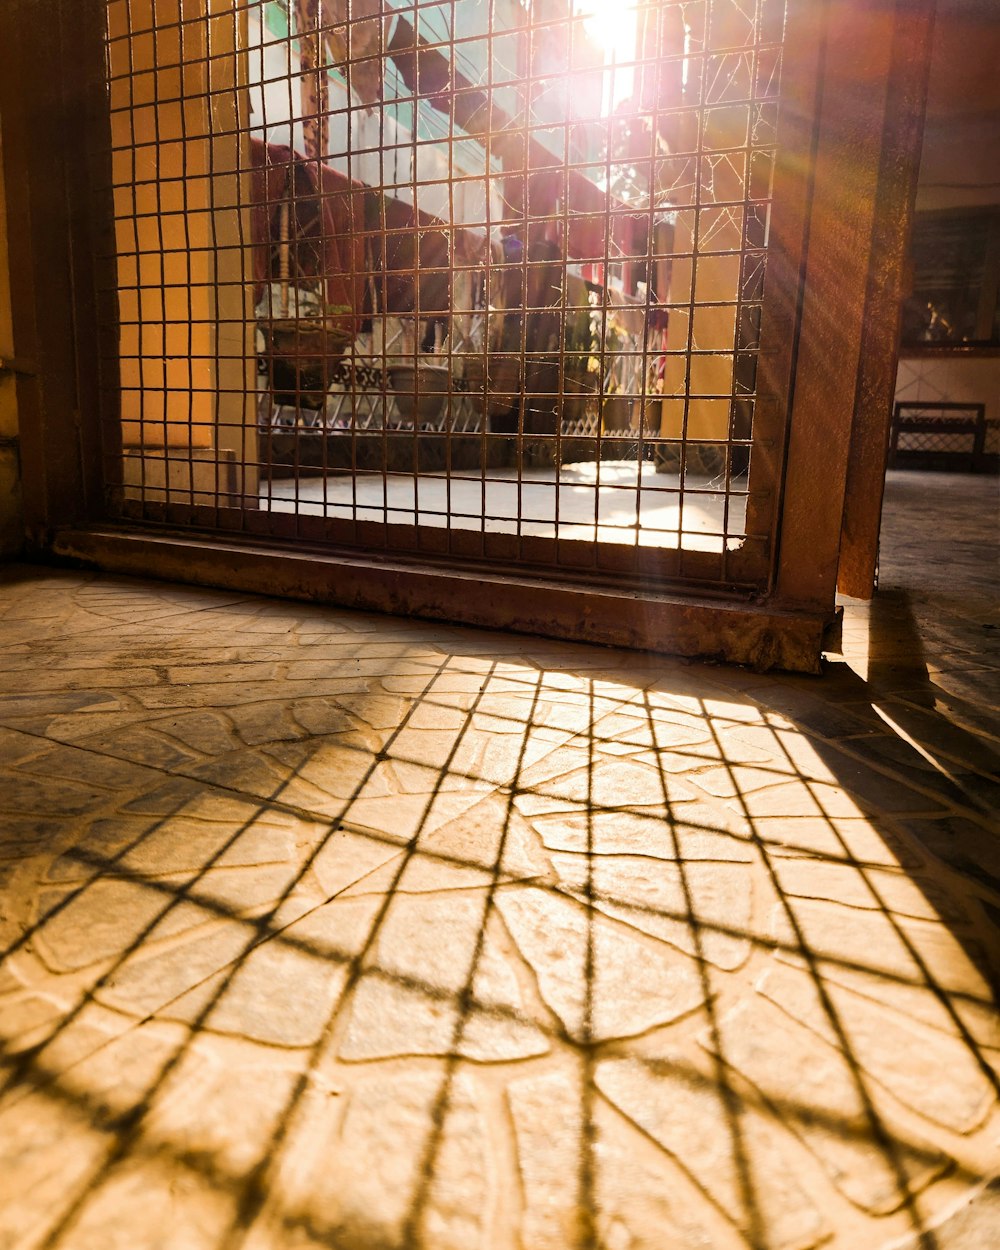 the sun shines through a window on a tiled floor